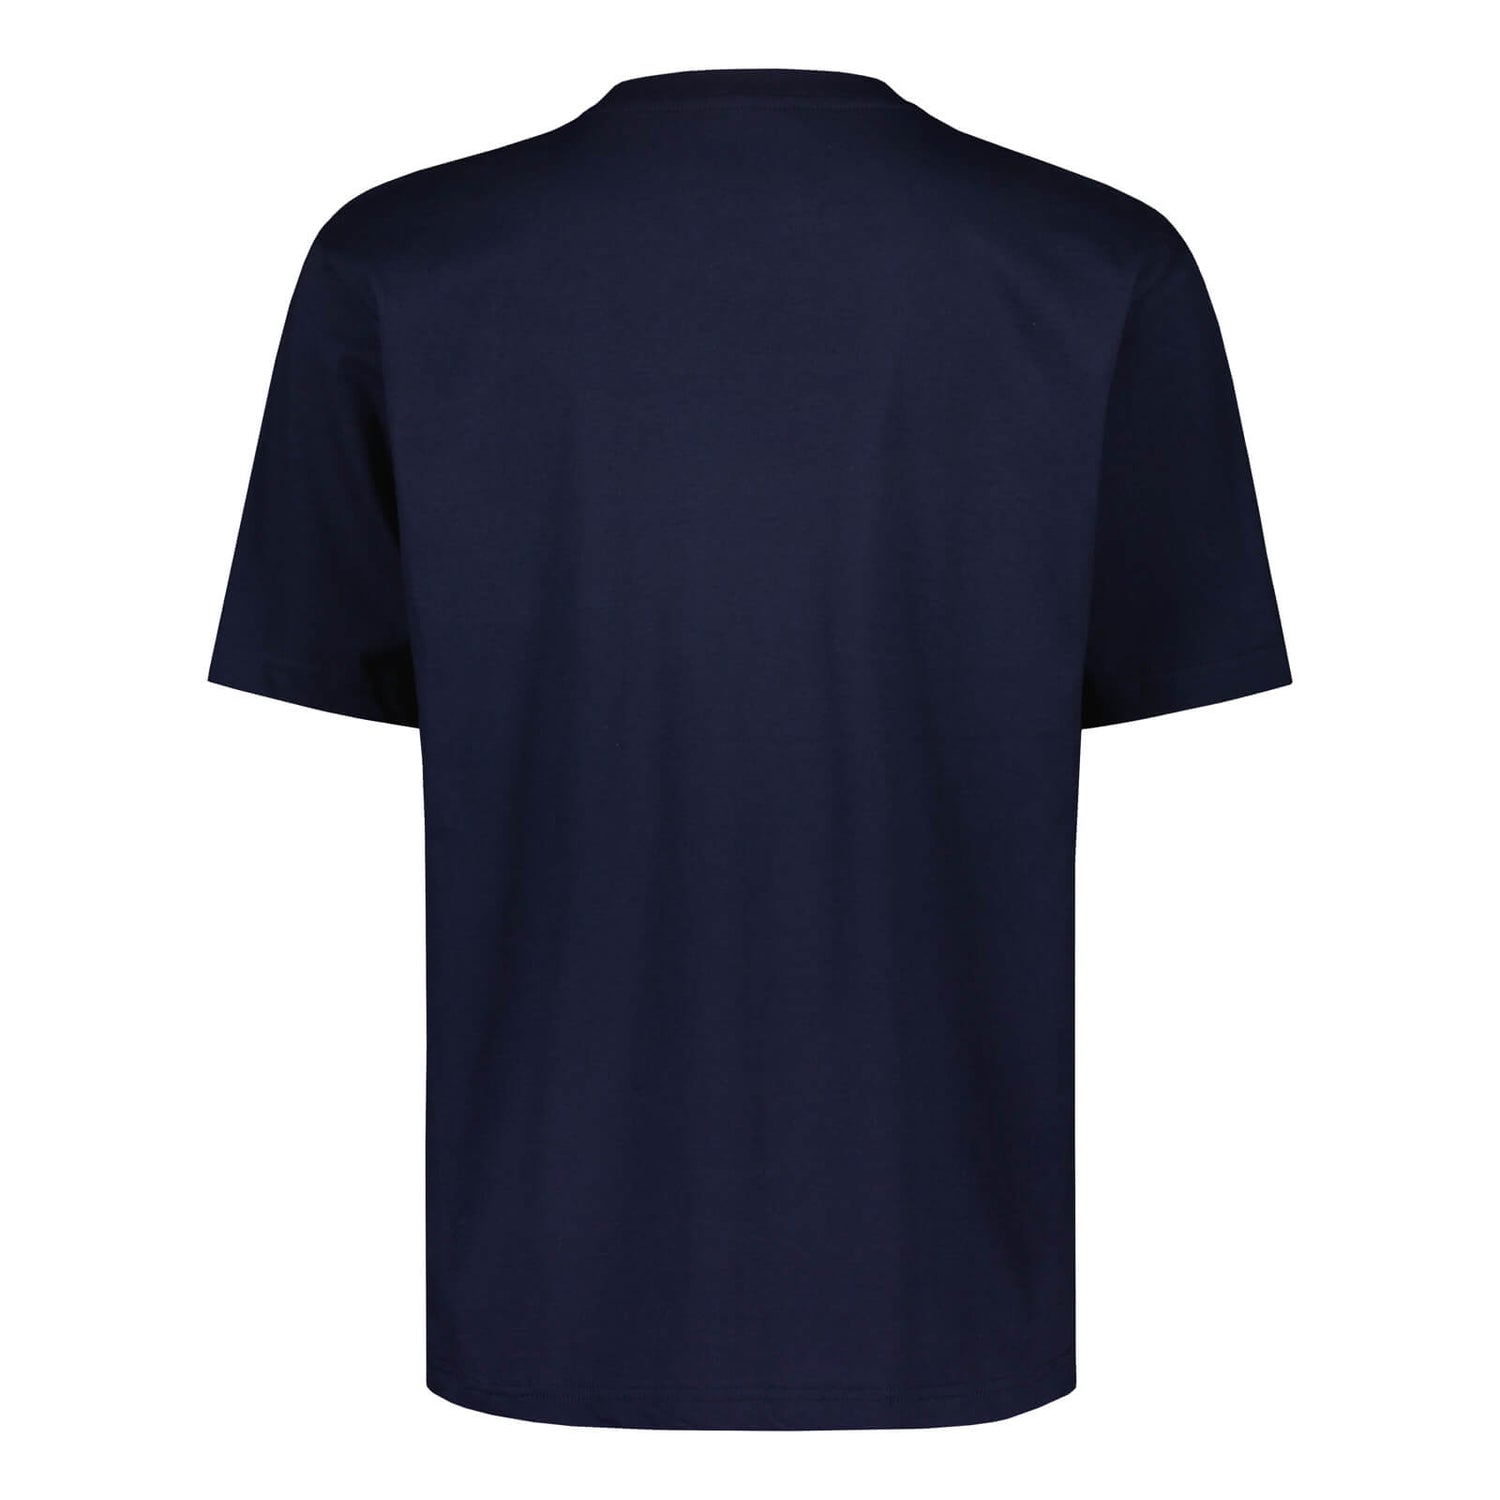 Teemu Pukki #10 Fan T-shirt, Navy Blue 